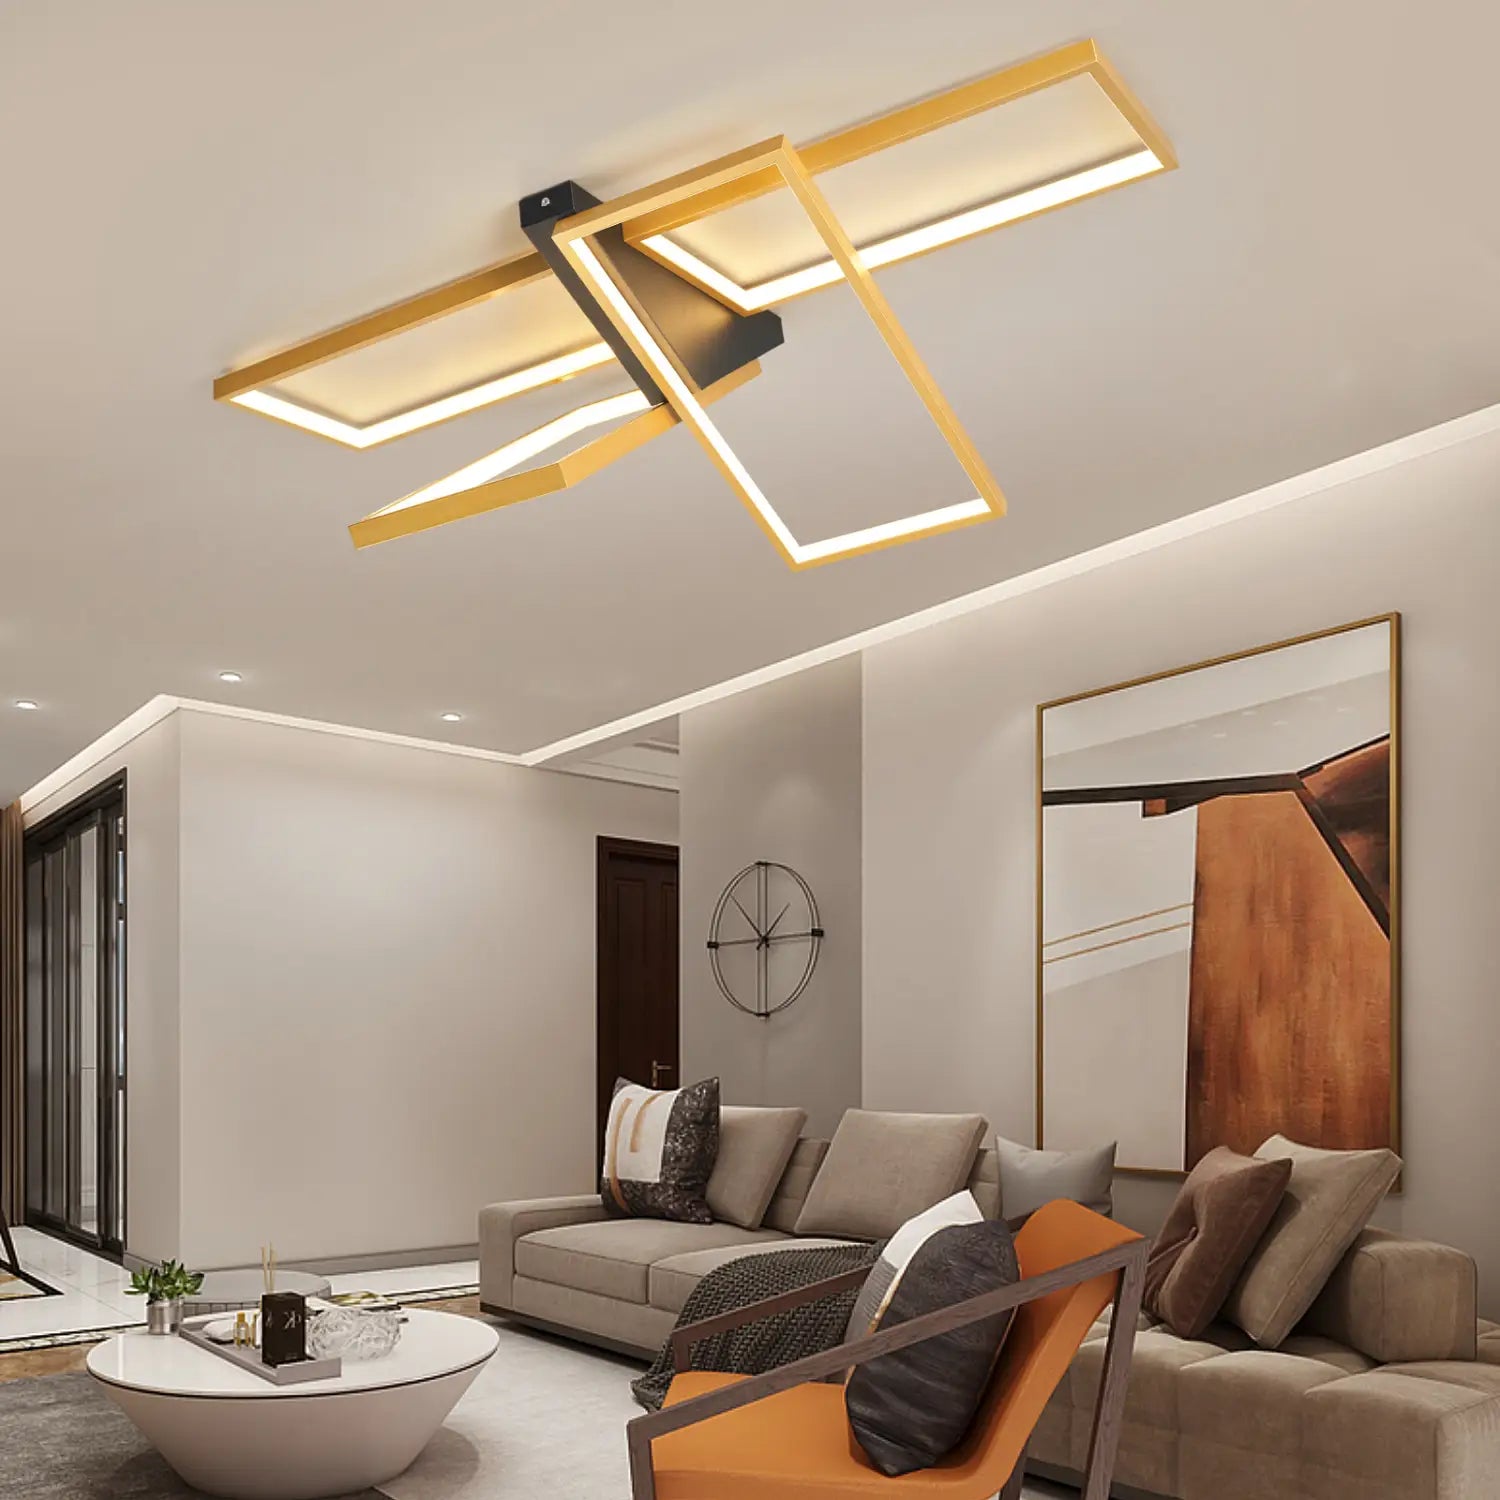 Modern Led Chandelier Lighting For Living Room Bedroom